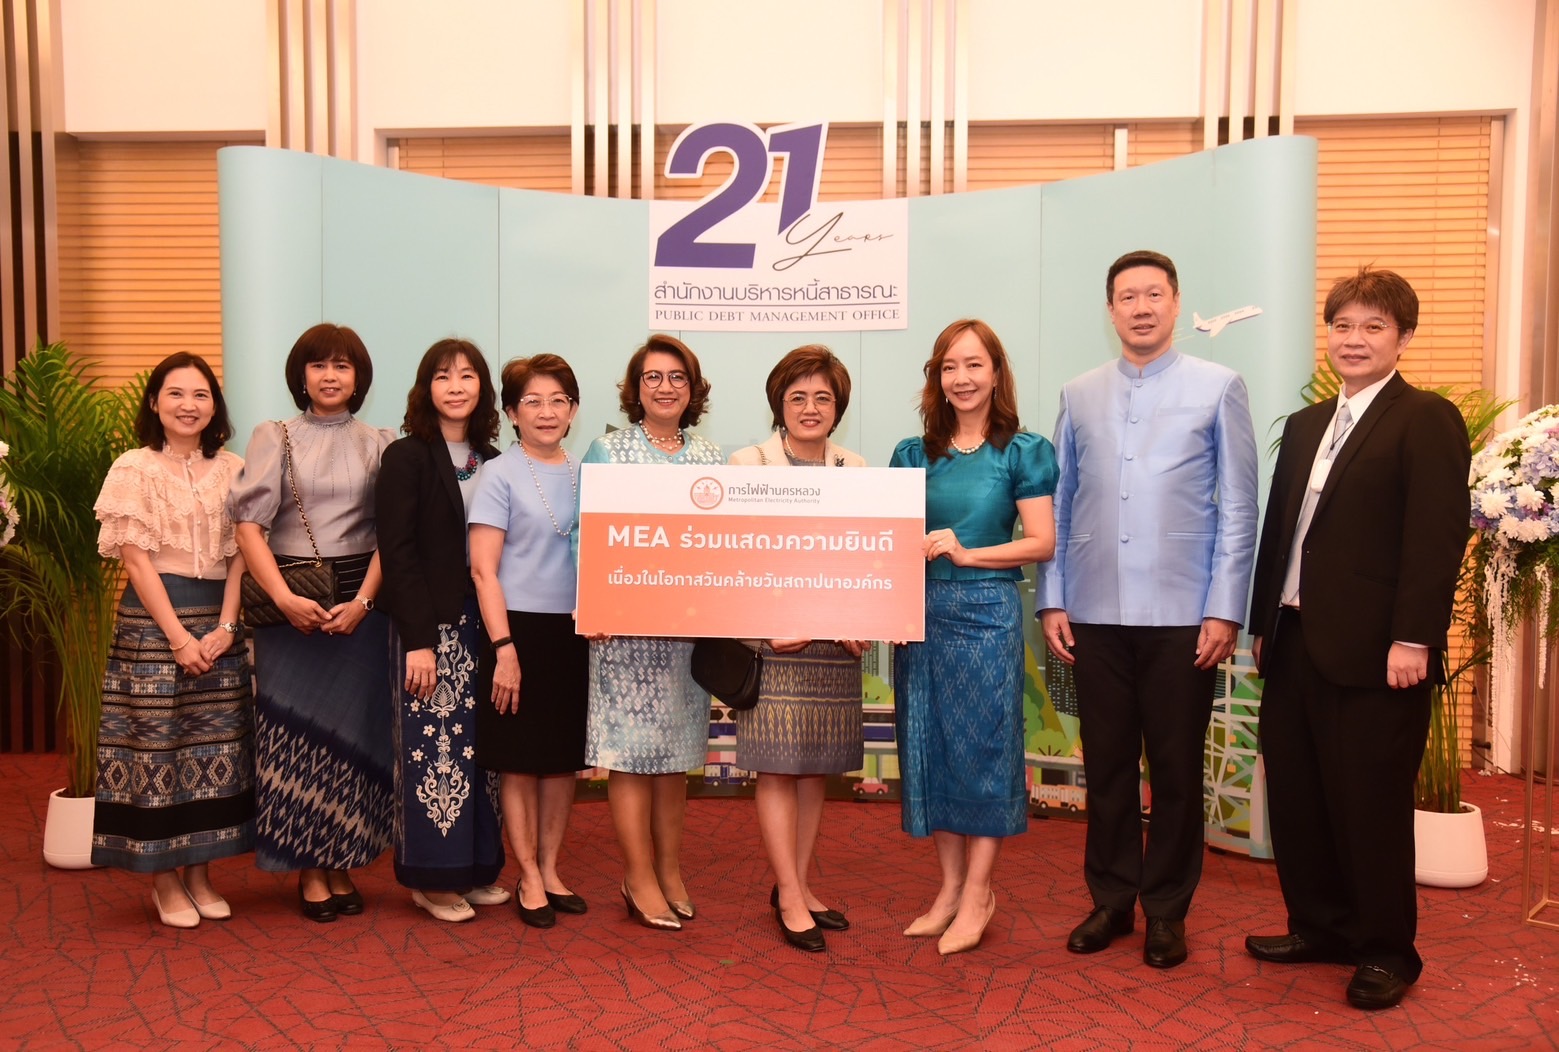 MEA ร่วมแสดงความยินดี เนื่องในโอกาสวันคล้ายวันสถาปนาสำนักงานบริหารหนี้สาธารณะ ครบรอบ 21 ปี